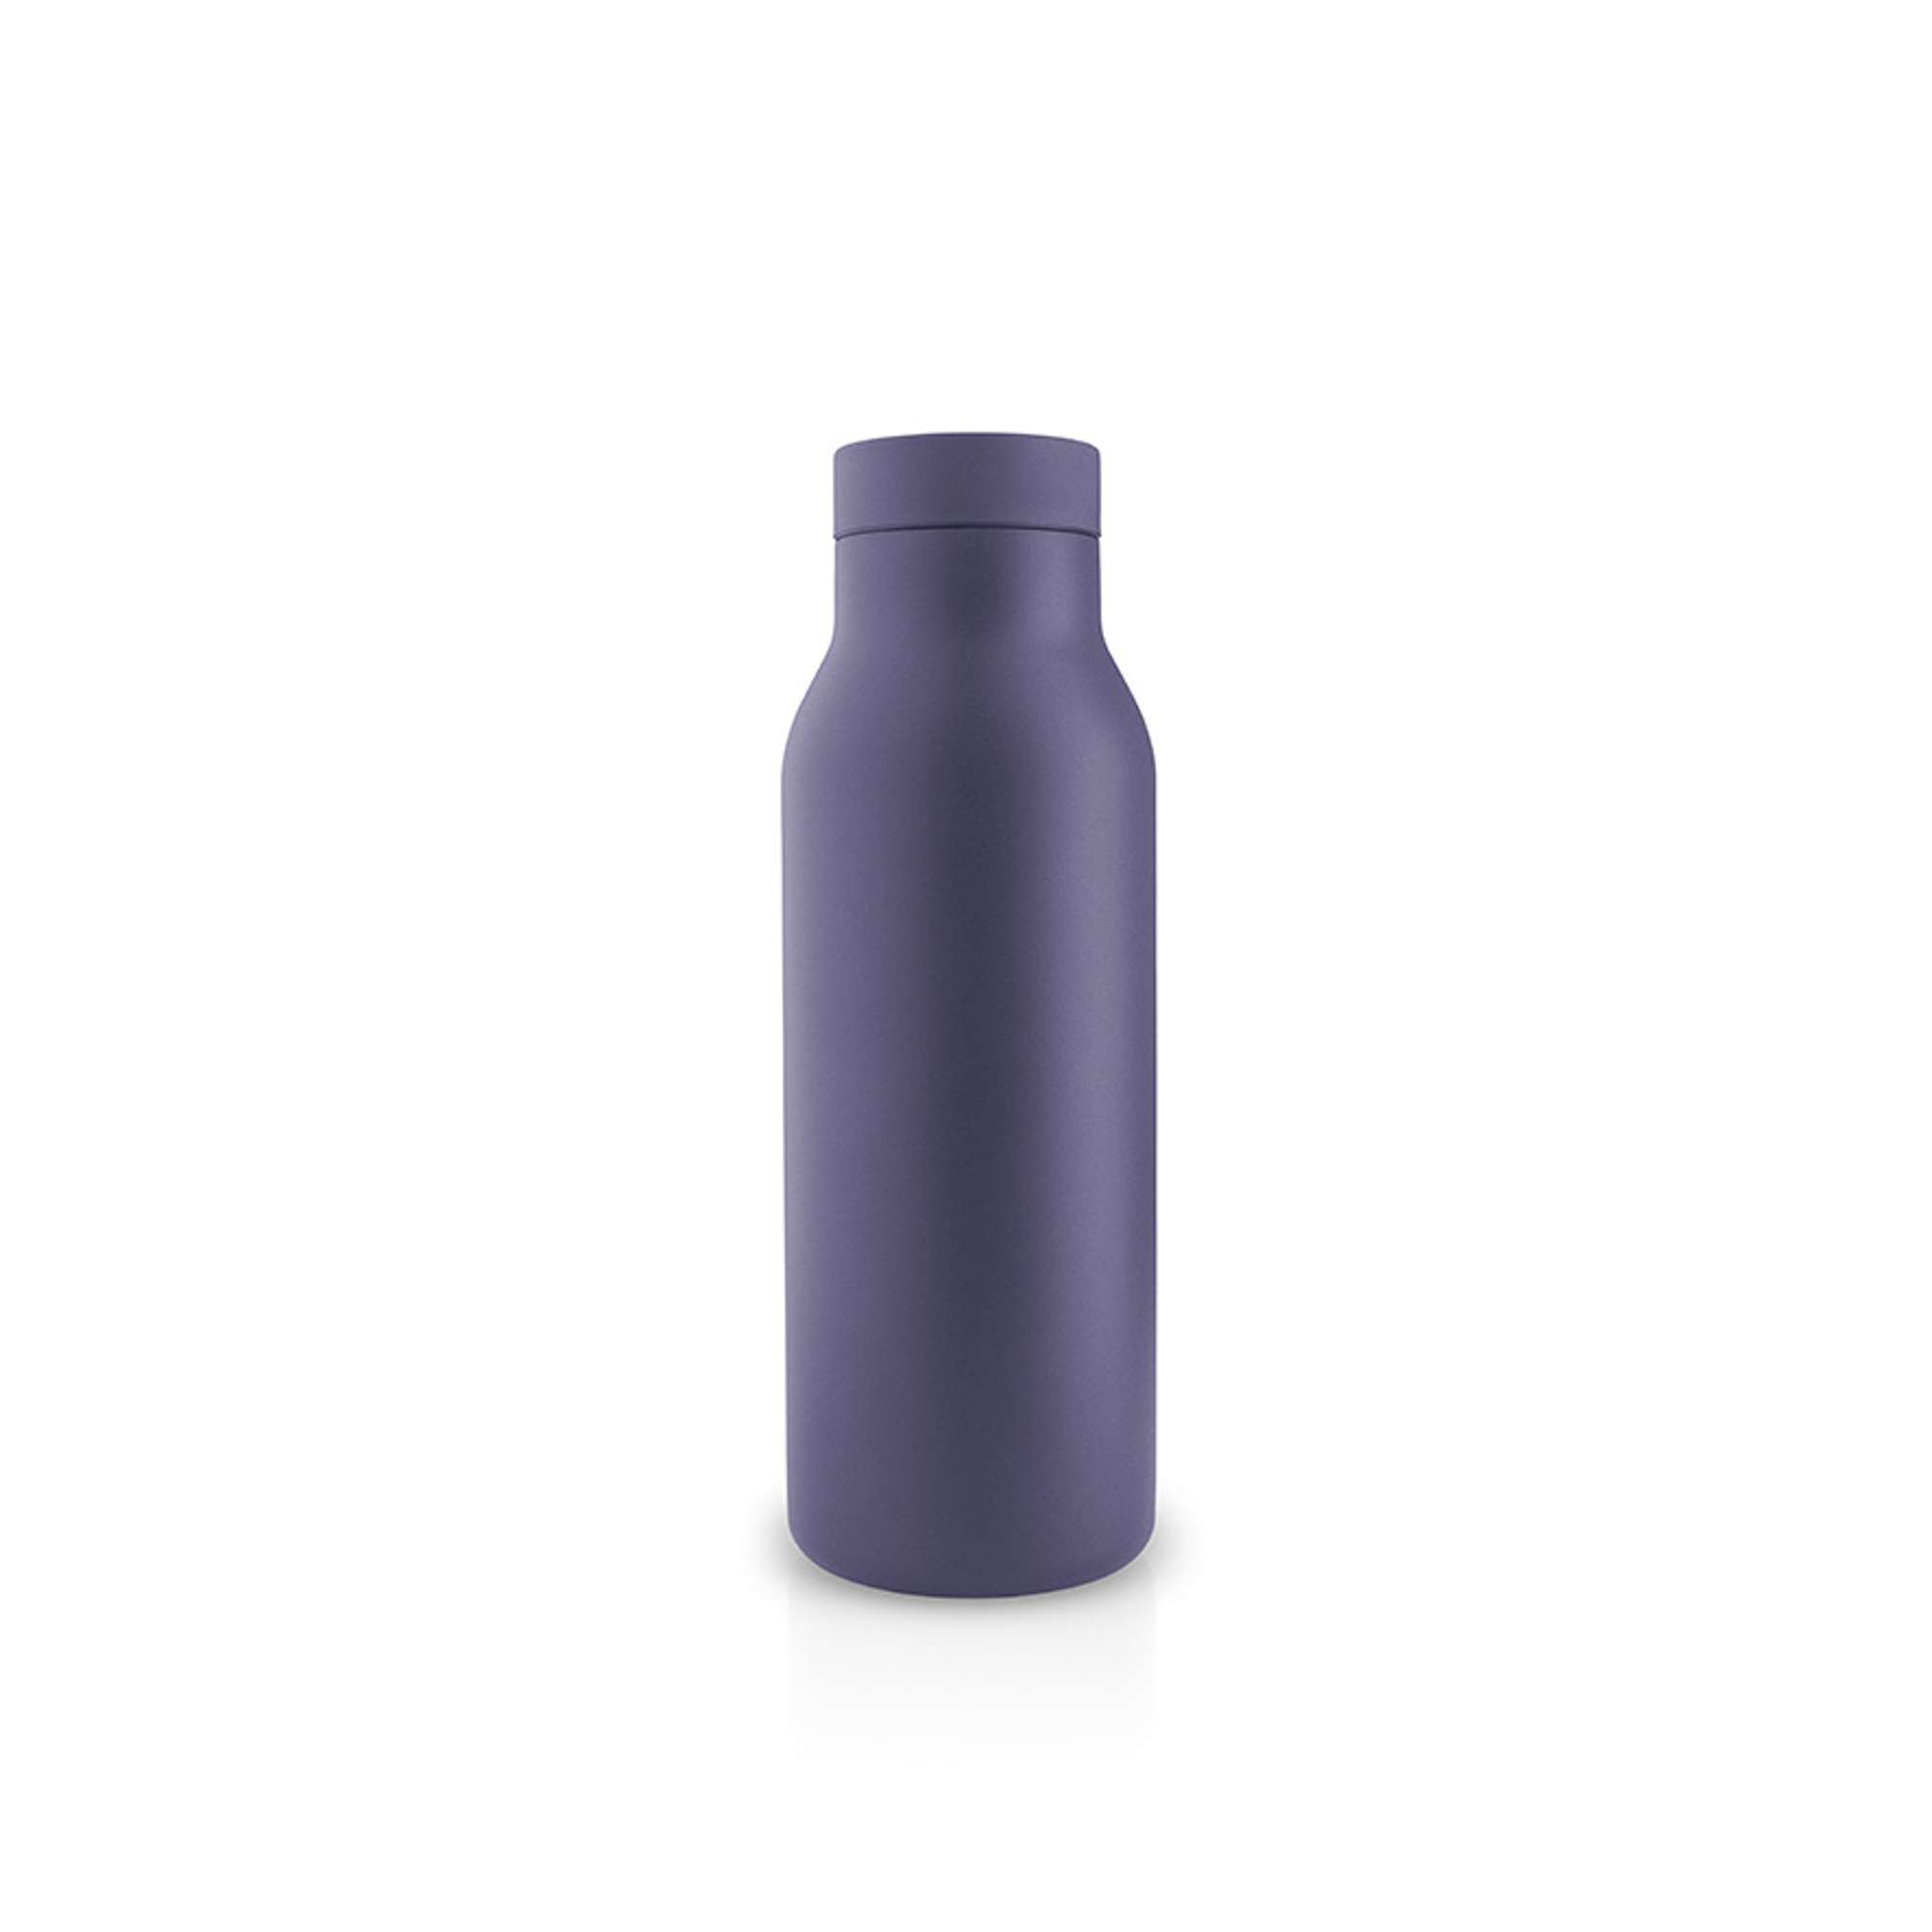 Urban termoflaske - 0,5 liter - Violet blue